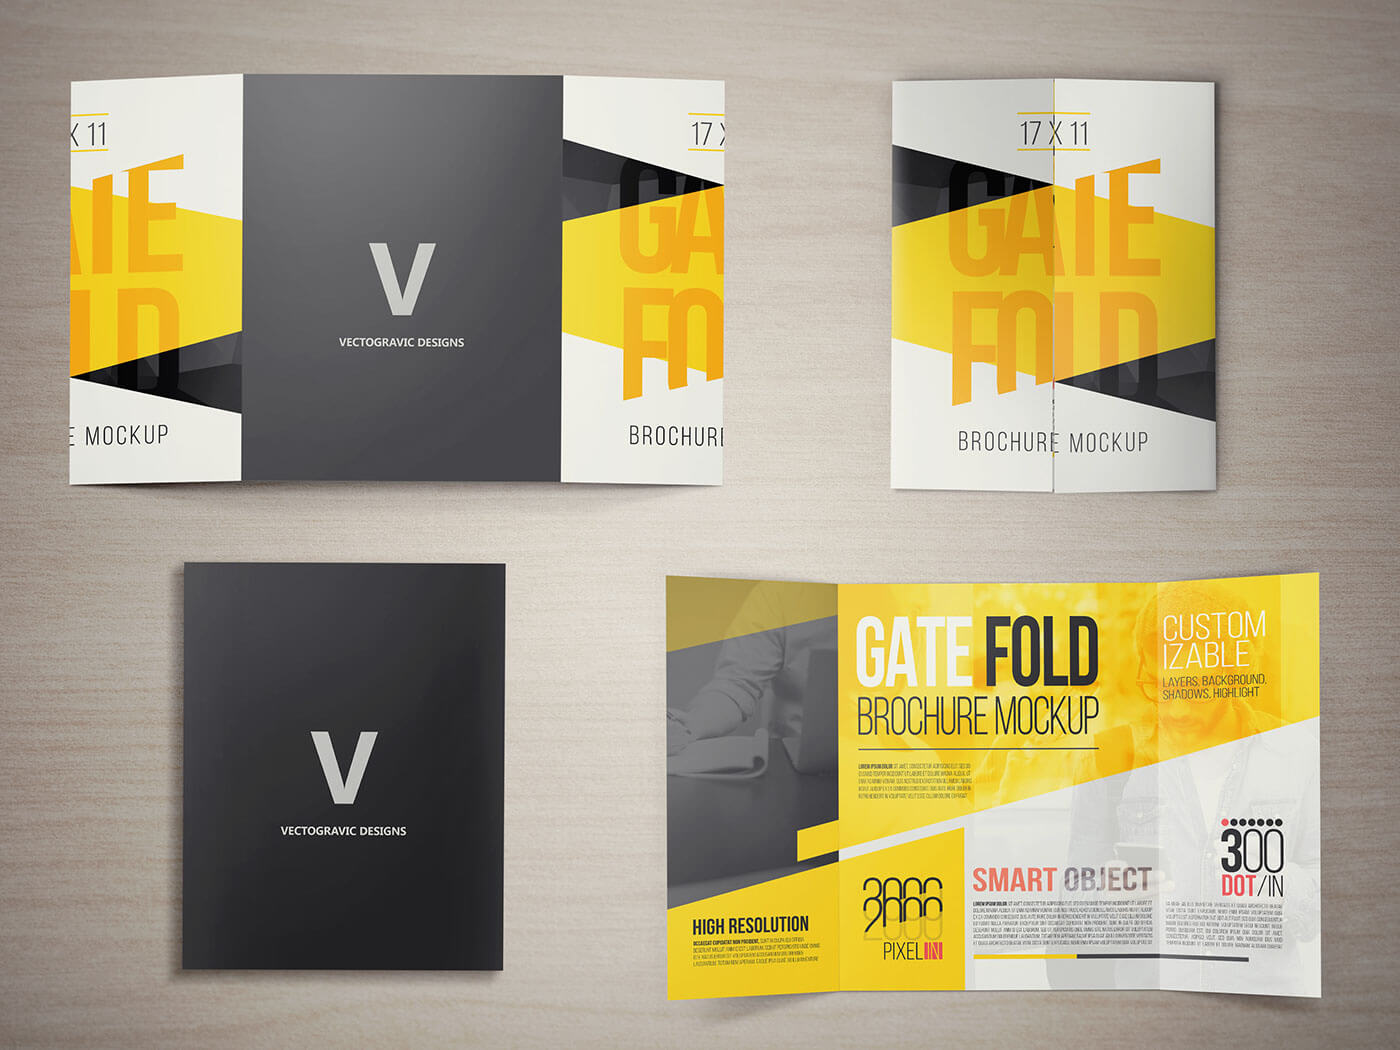 17 X 11 Gate Fold Brochure Mockup On Behance Inside Gate Fold Brochure Template